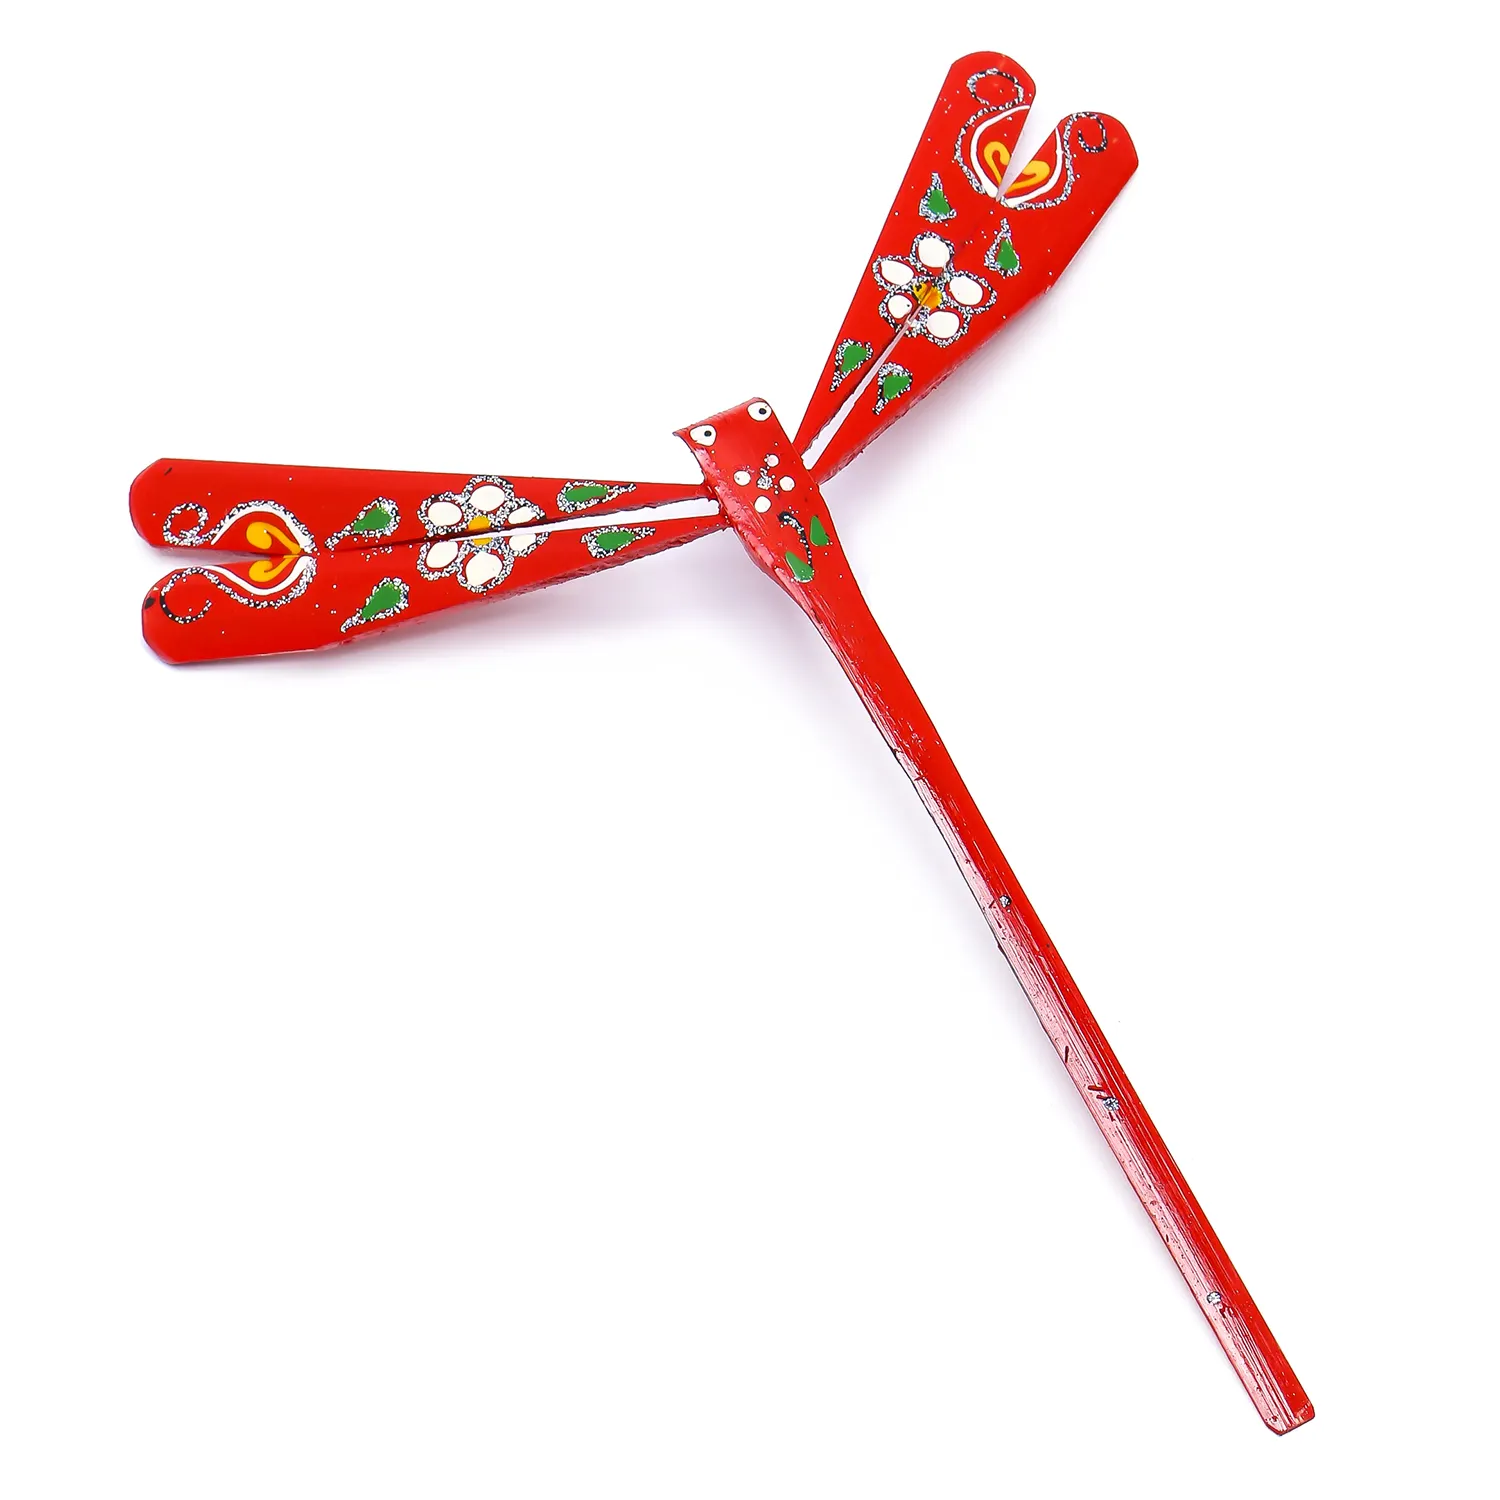 يُستخدم اليعسوب المصنوع من خشب الخيزران المتوازن في الأعمال اليدوية كديكور تقليدي أو هدايا السيدة صوفي